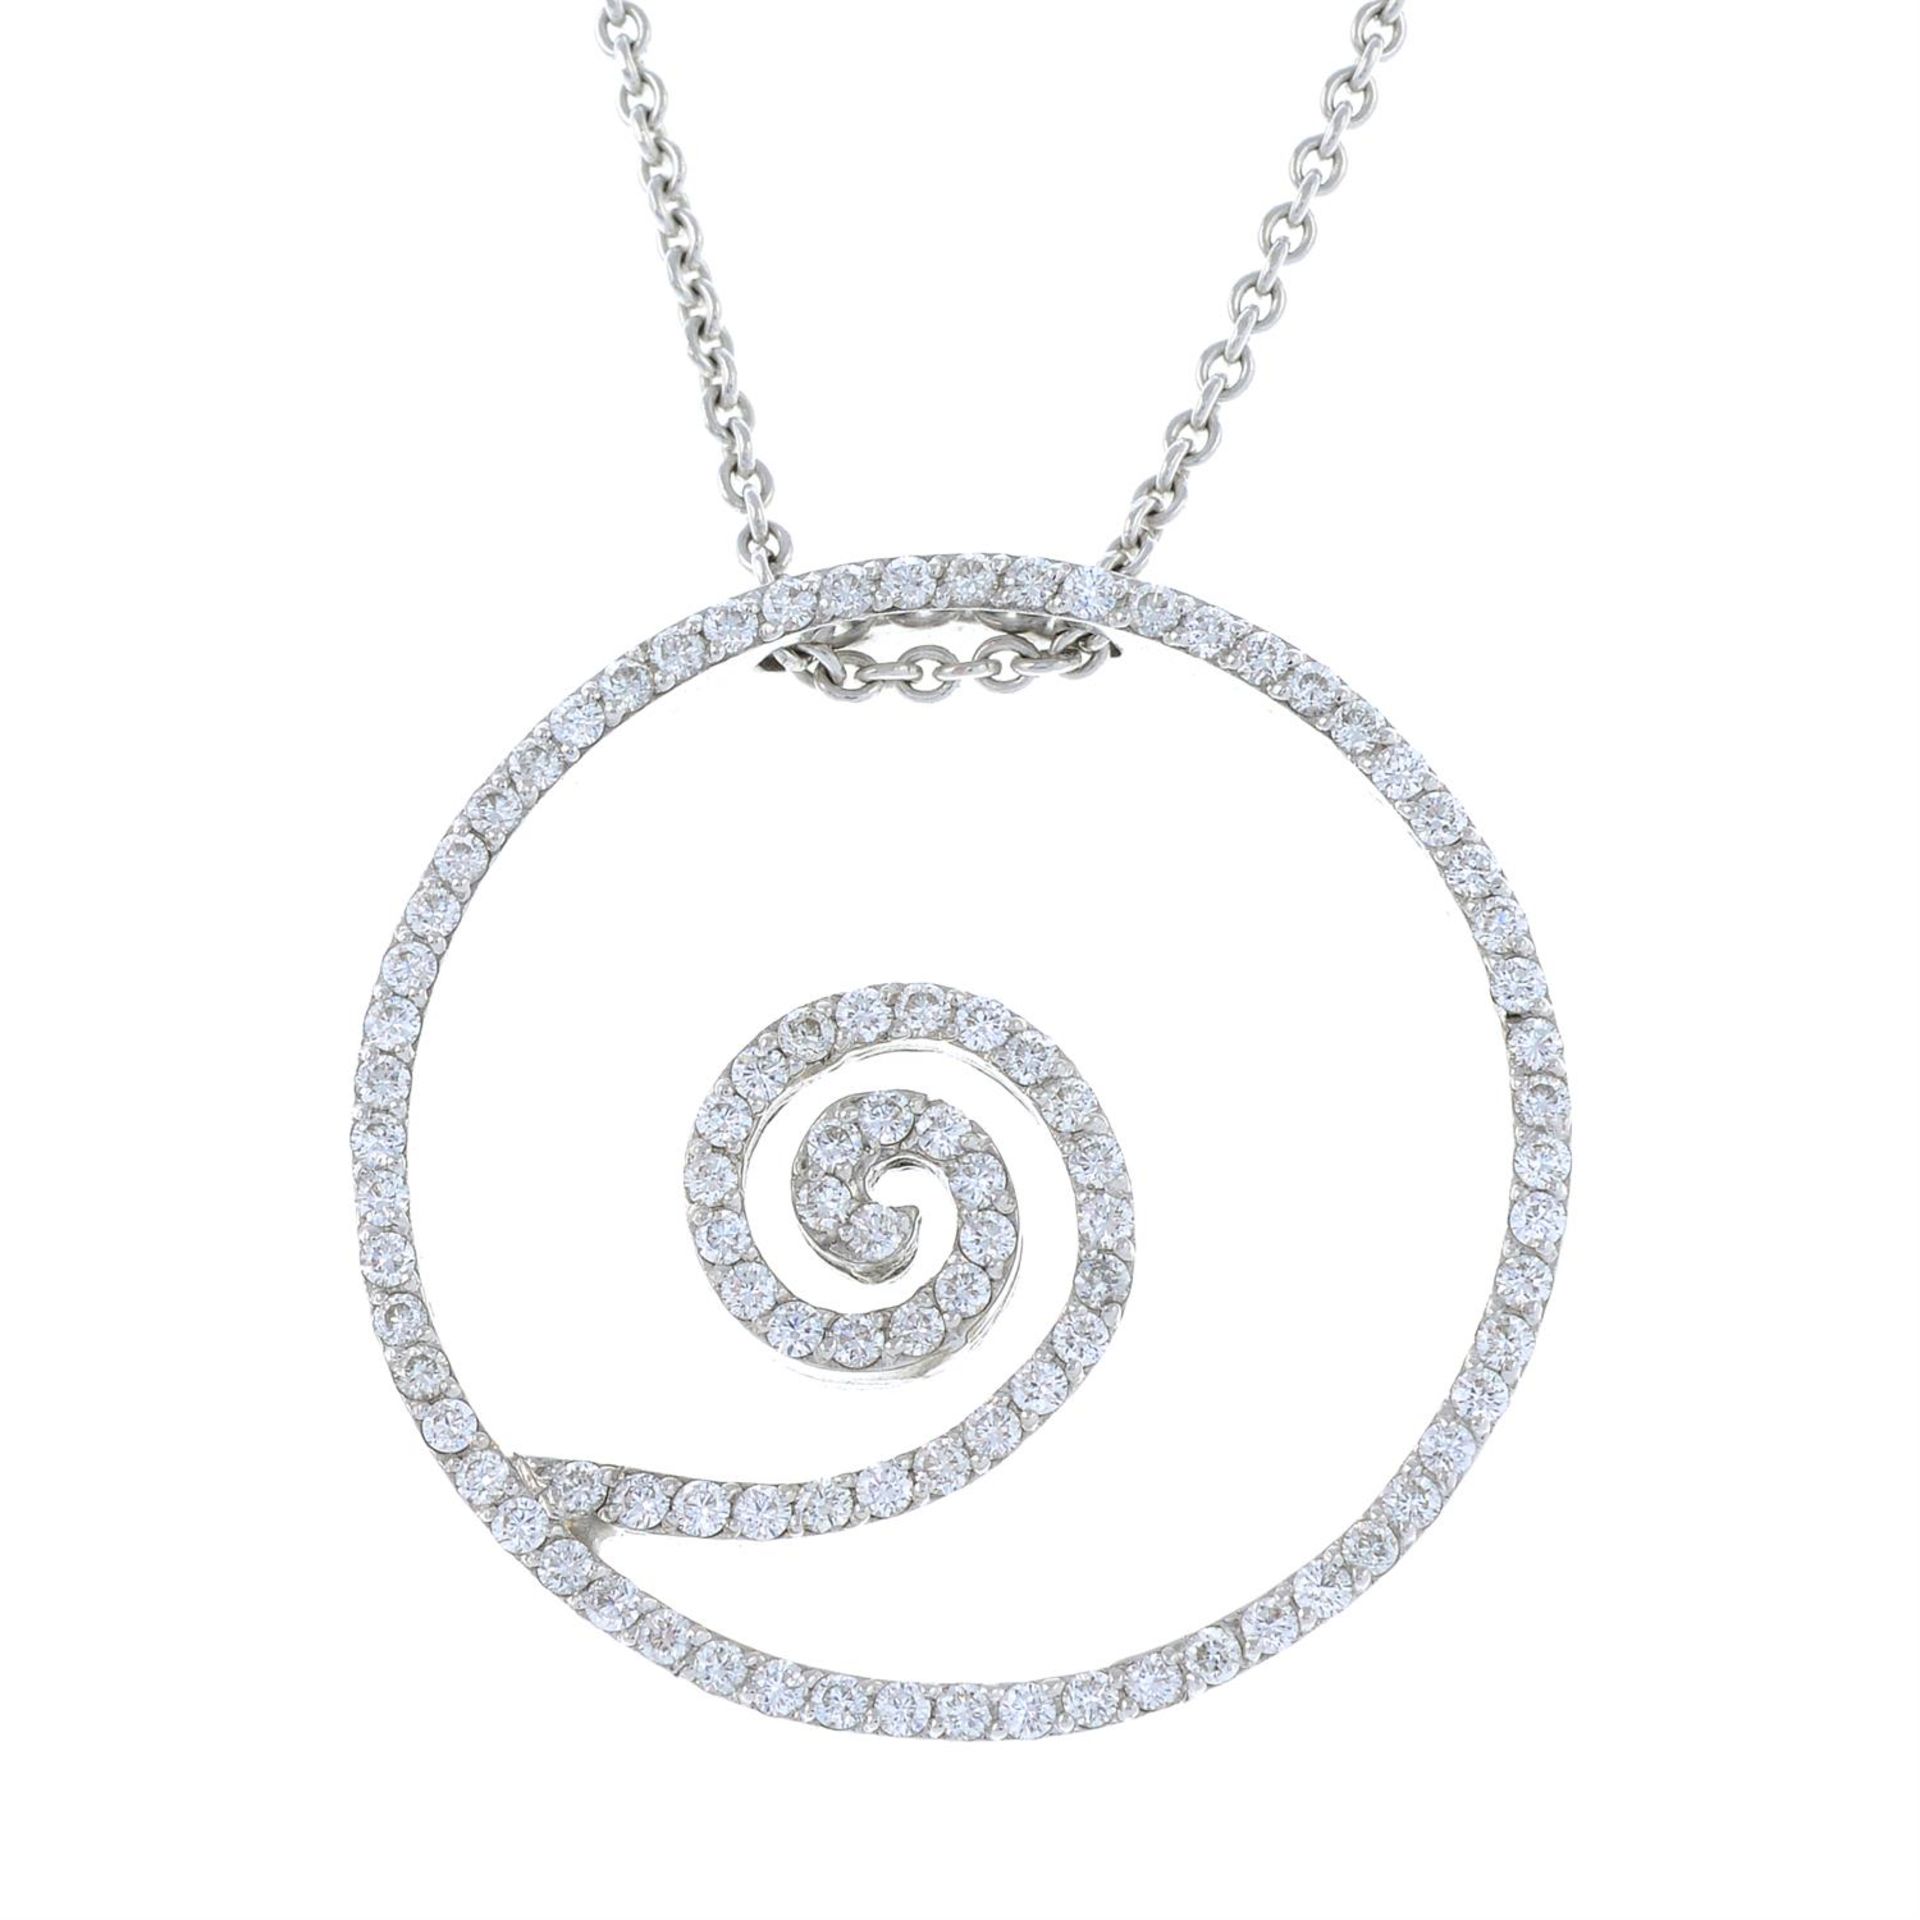 A brilliant-cut diamond openwork pendant, with integral chain.